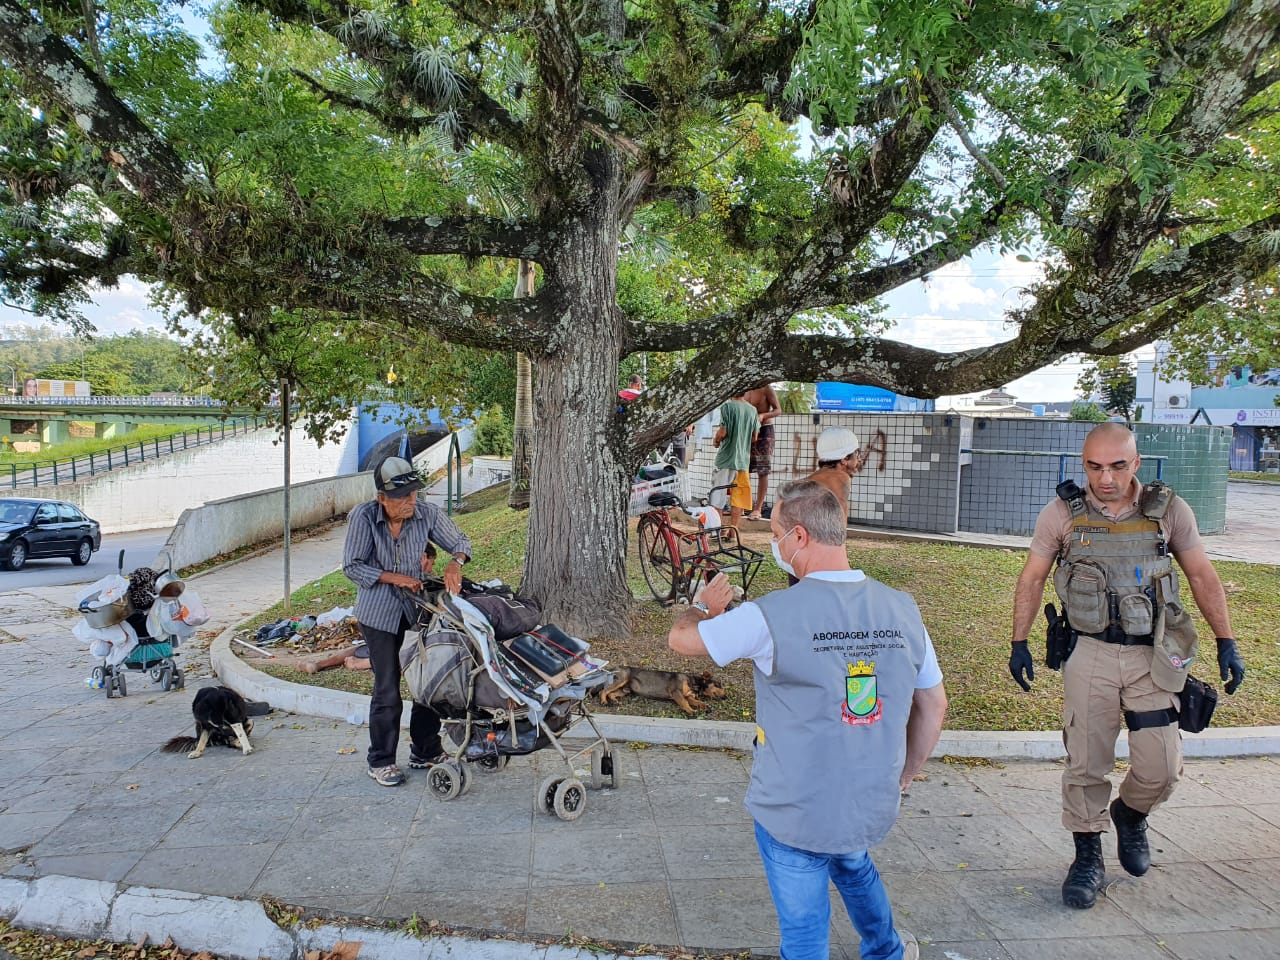 Corona Vírus: Com atendimento 24 horas, Secretaria de Assistência Social acolhe cerca de 40 pessoas em situação de rua no albergue